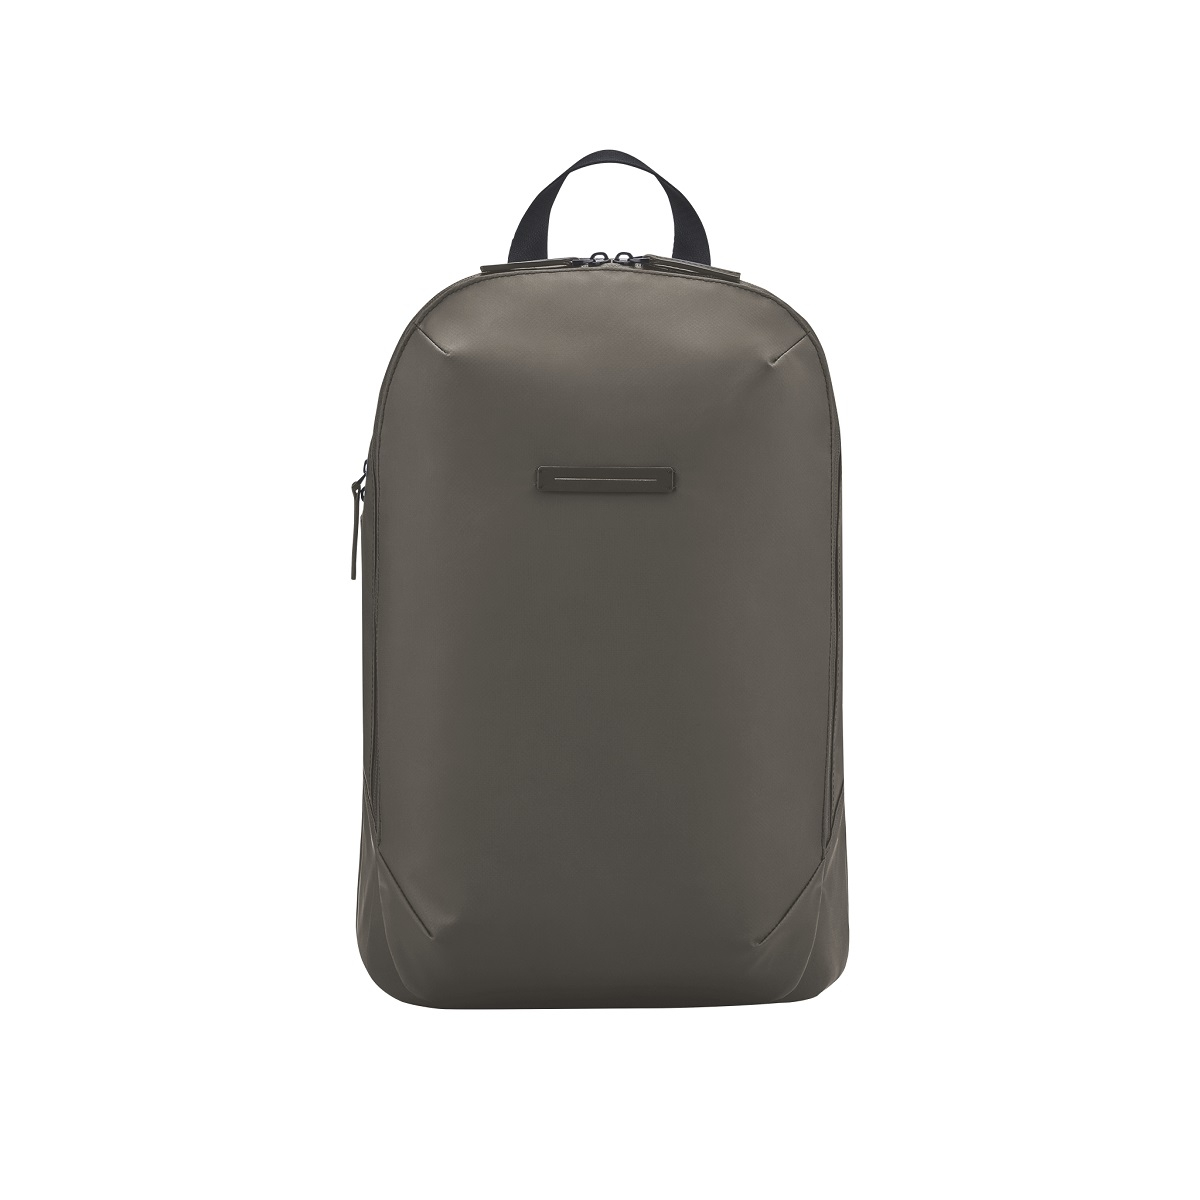 Image of Gion Backpack in Dark Olive Grösse M